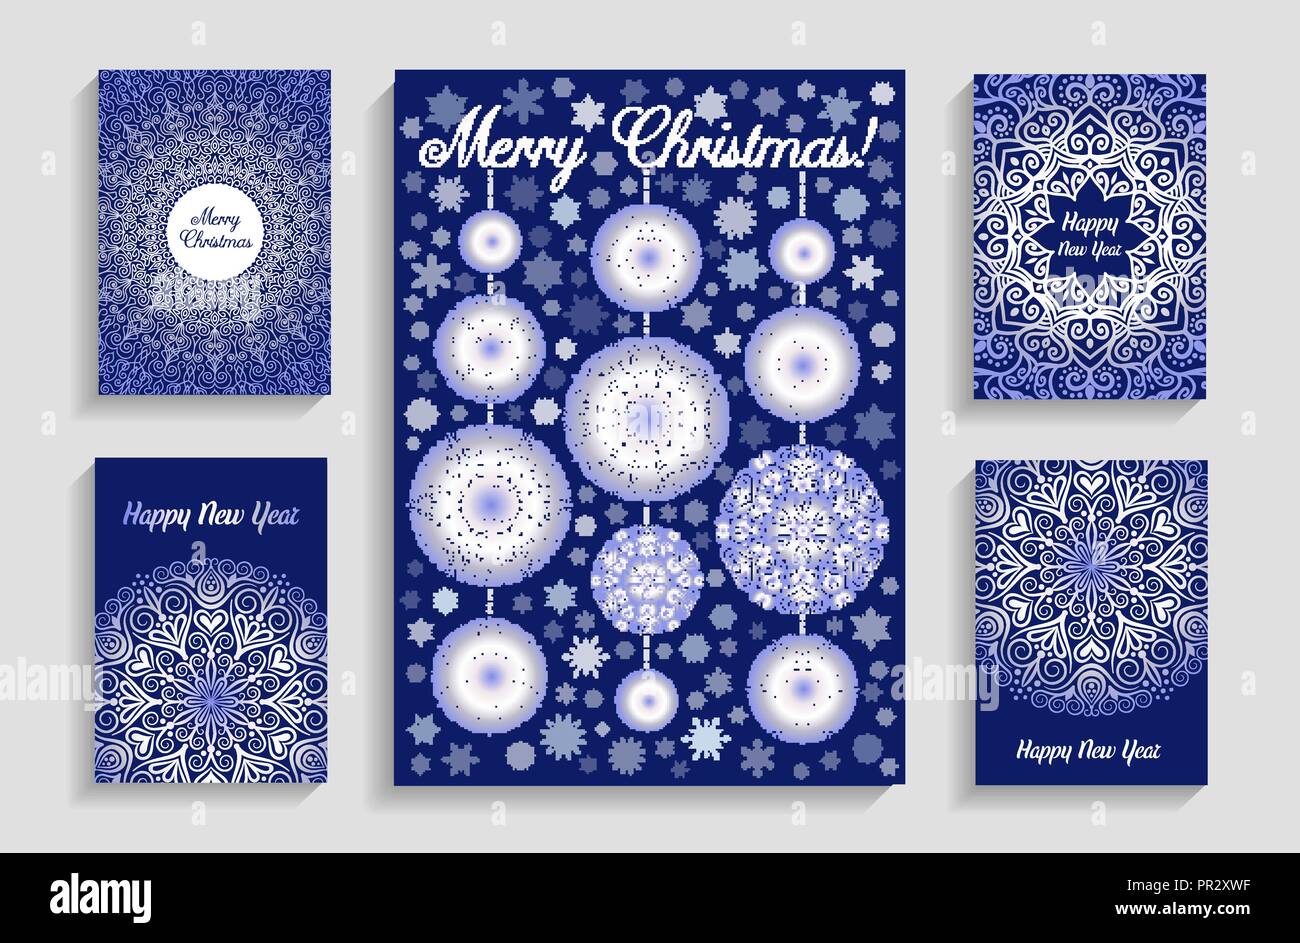 Weihnachtskarten mit Mandala Schneeflocken auf blauem Hintergrund Stock Vektor